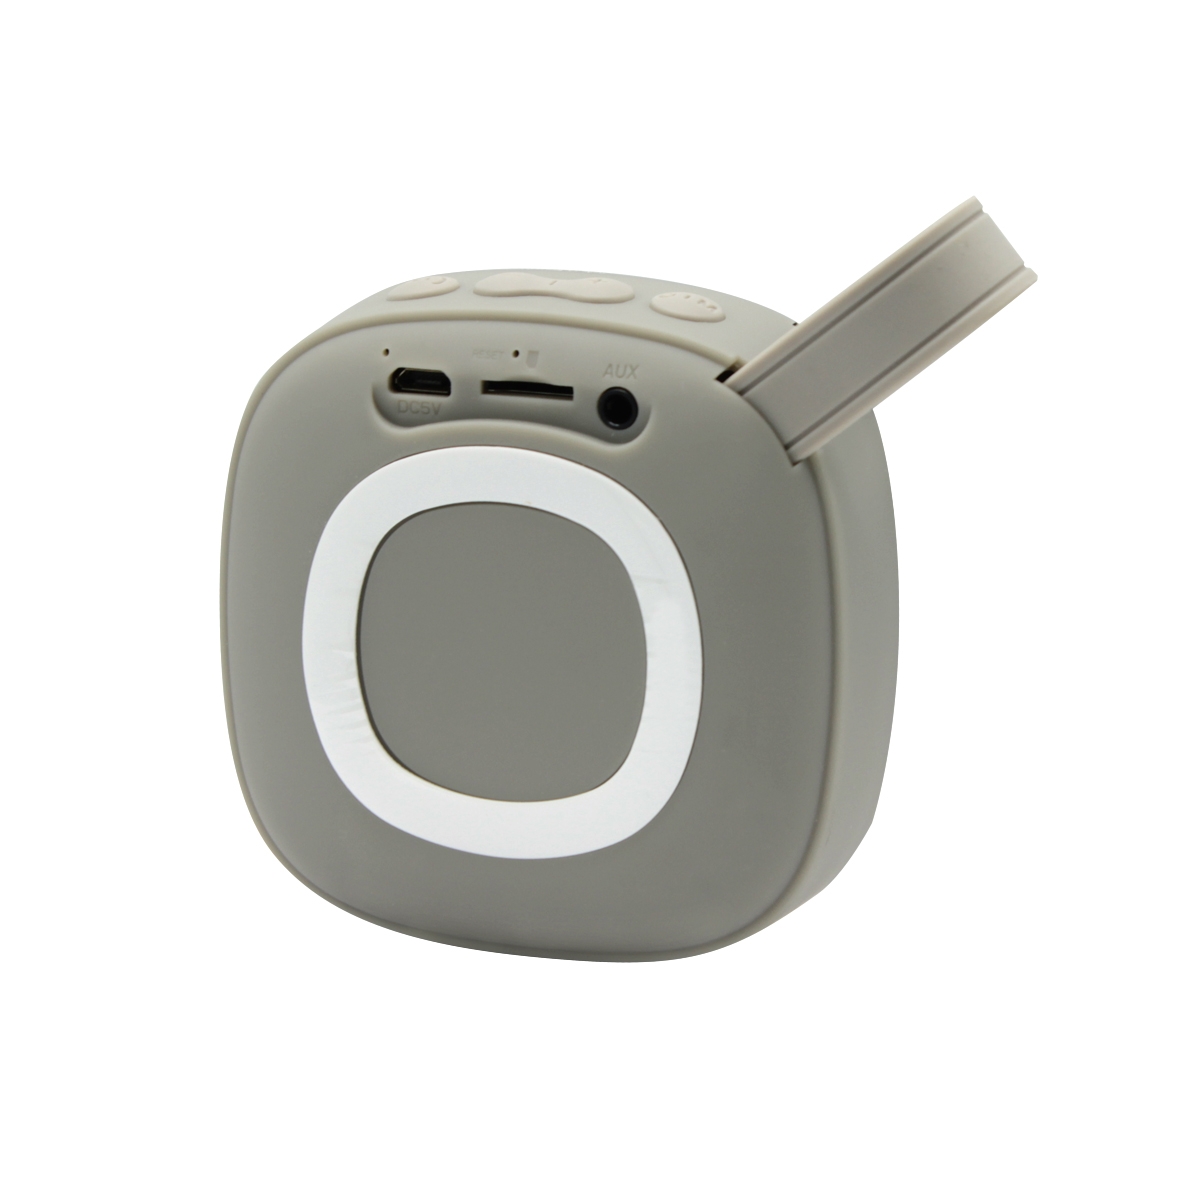 Беспроводная Bluetooth колонка X25 Outdoor (BLTS01), серая, серый